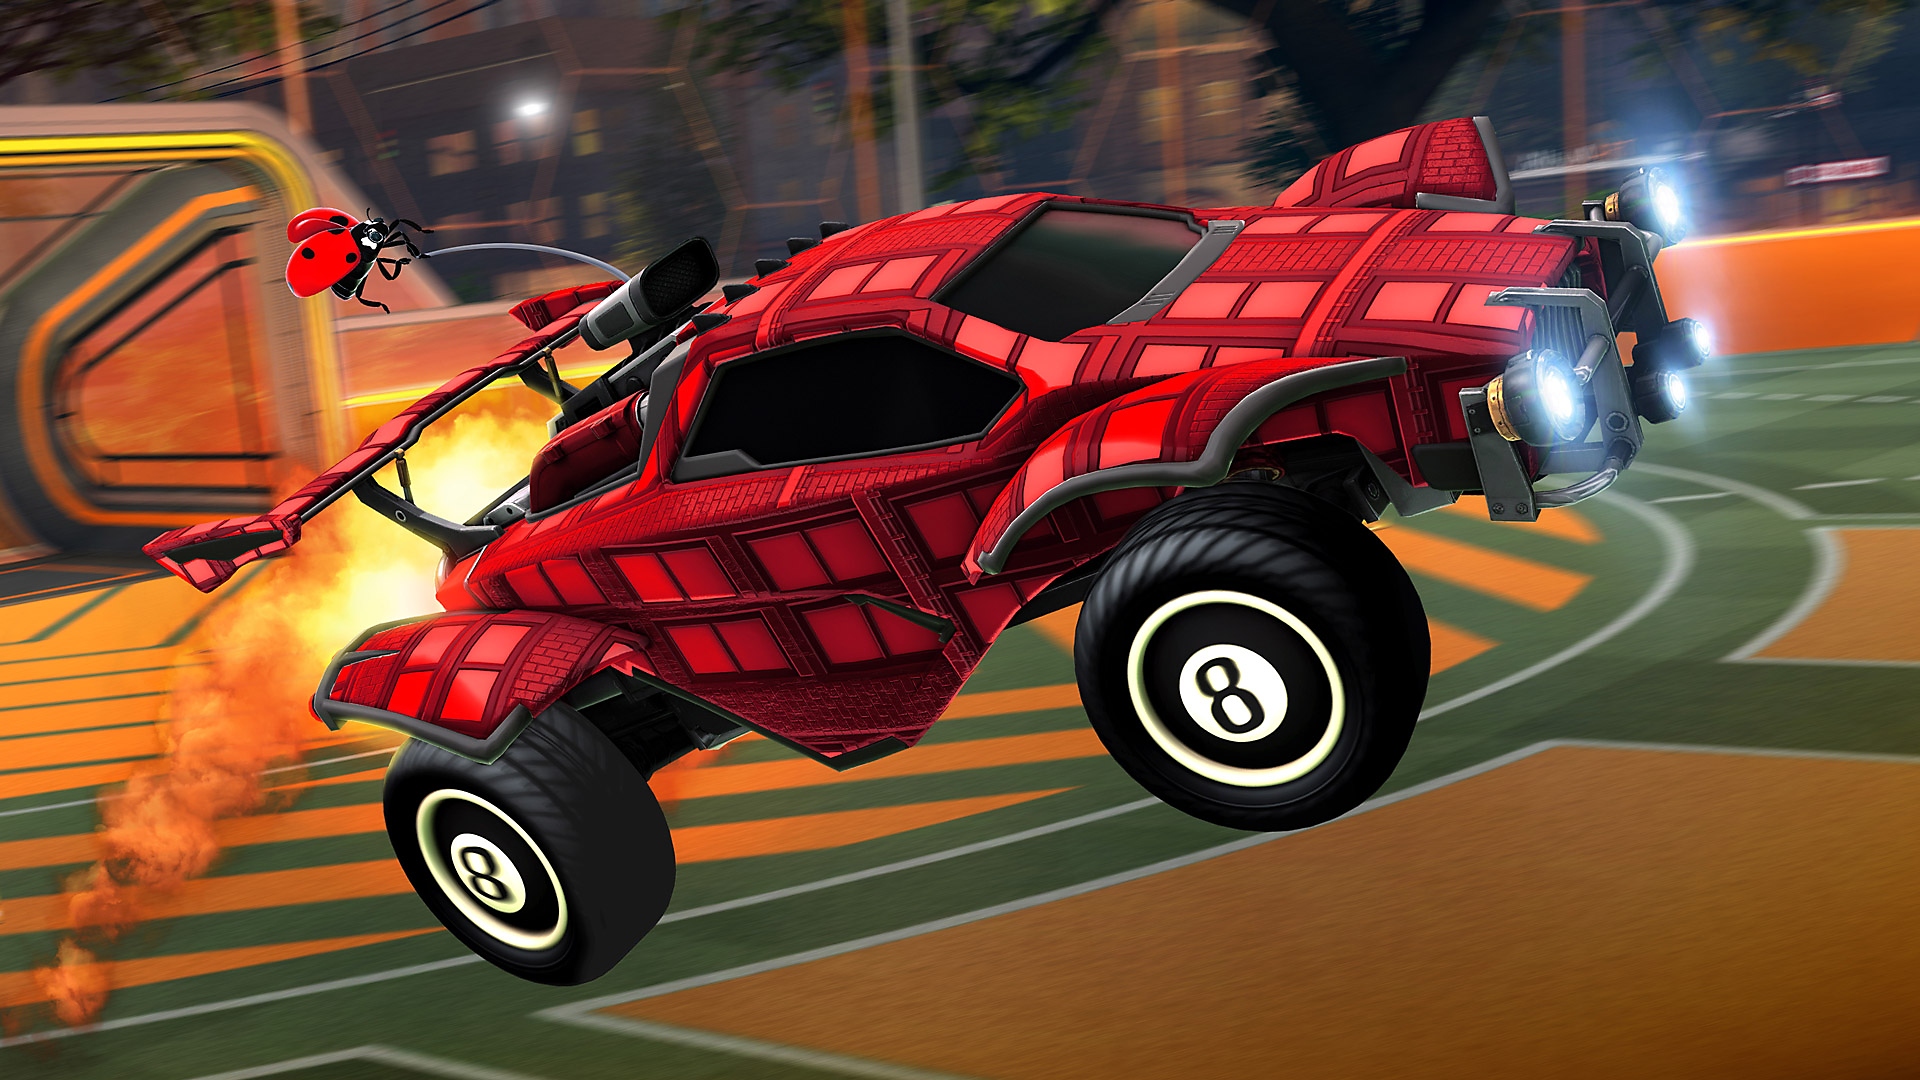 Capture d'écran de Rocket League montrant une voiture rouge